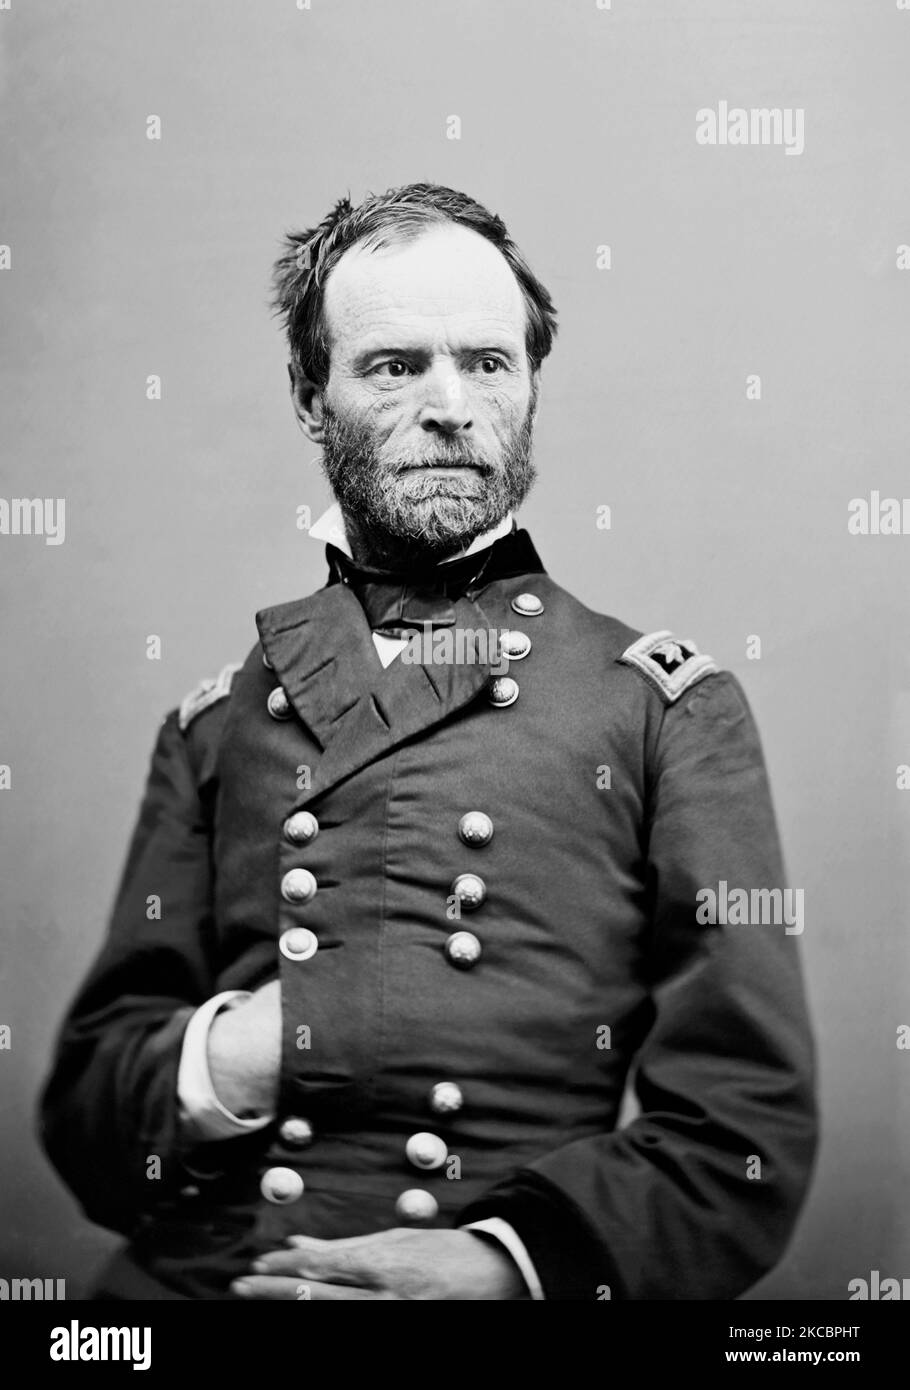 Ritratto di William Tecumseh Sherman, che servì come generale nell'esercito dell'Unione. Foto Stock